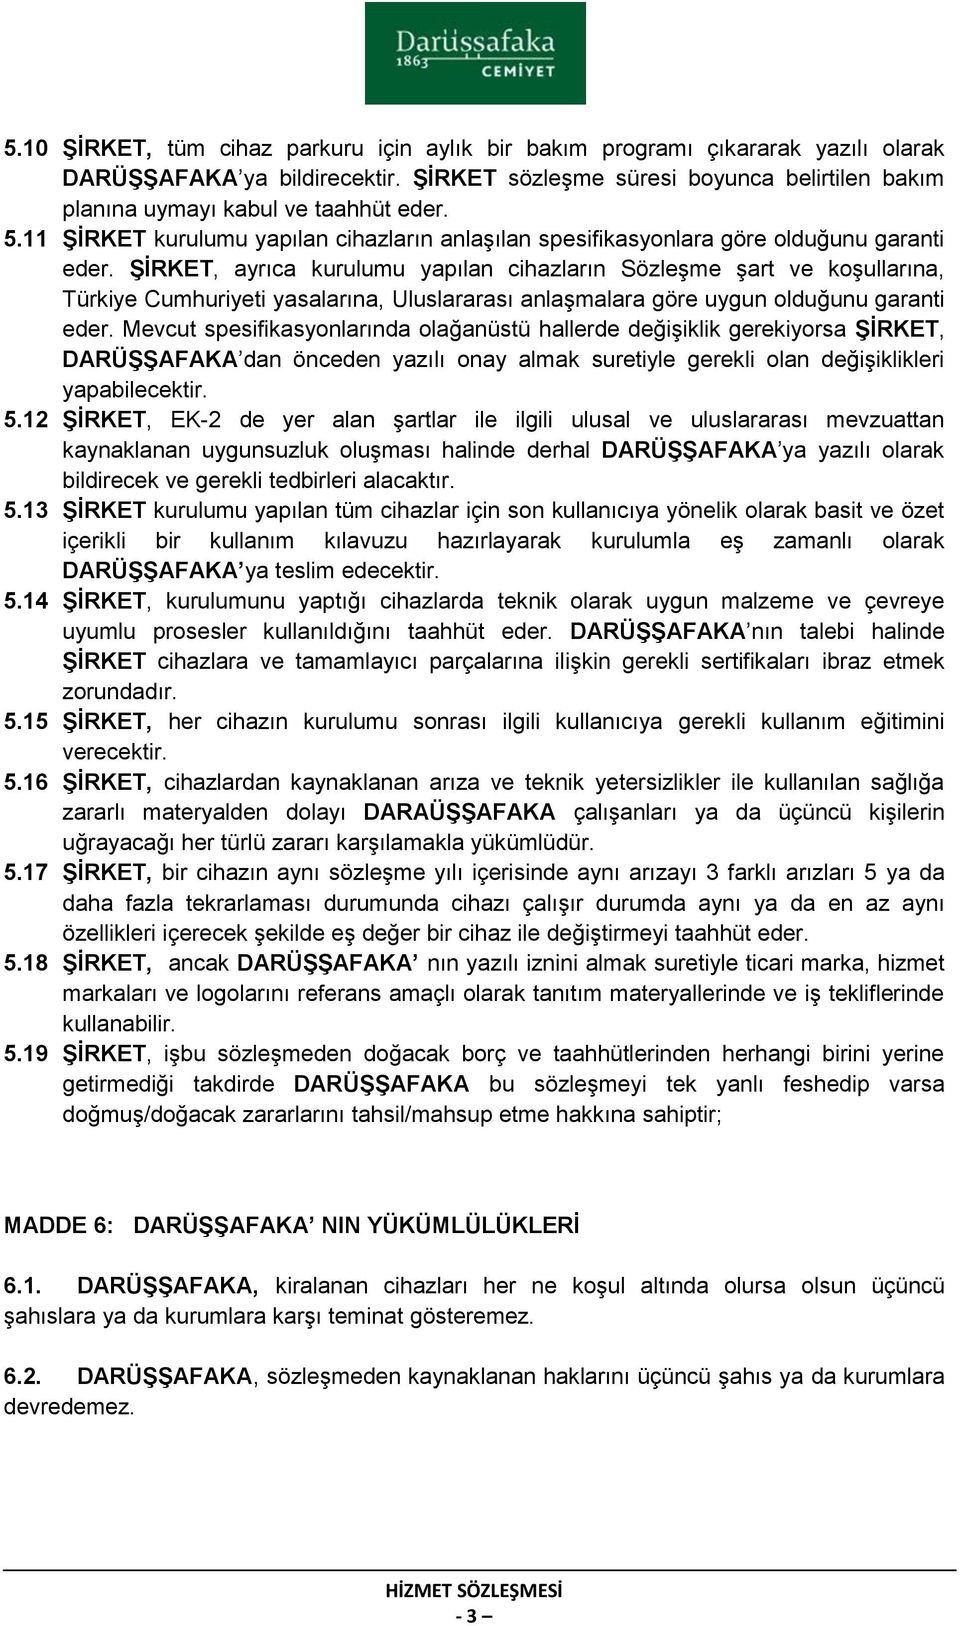 ġġrket, ayrıca kurulumu yapılan cihazların Sözleşme şart ve koşullarına, Türkiye Cumhuriyeti yasalarına, Uluslararası anlaşmalara göre uygun olduğunu garanti eder.